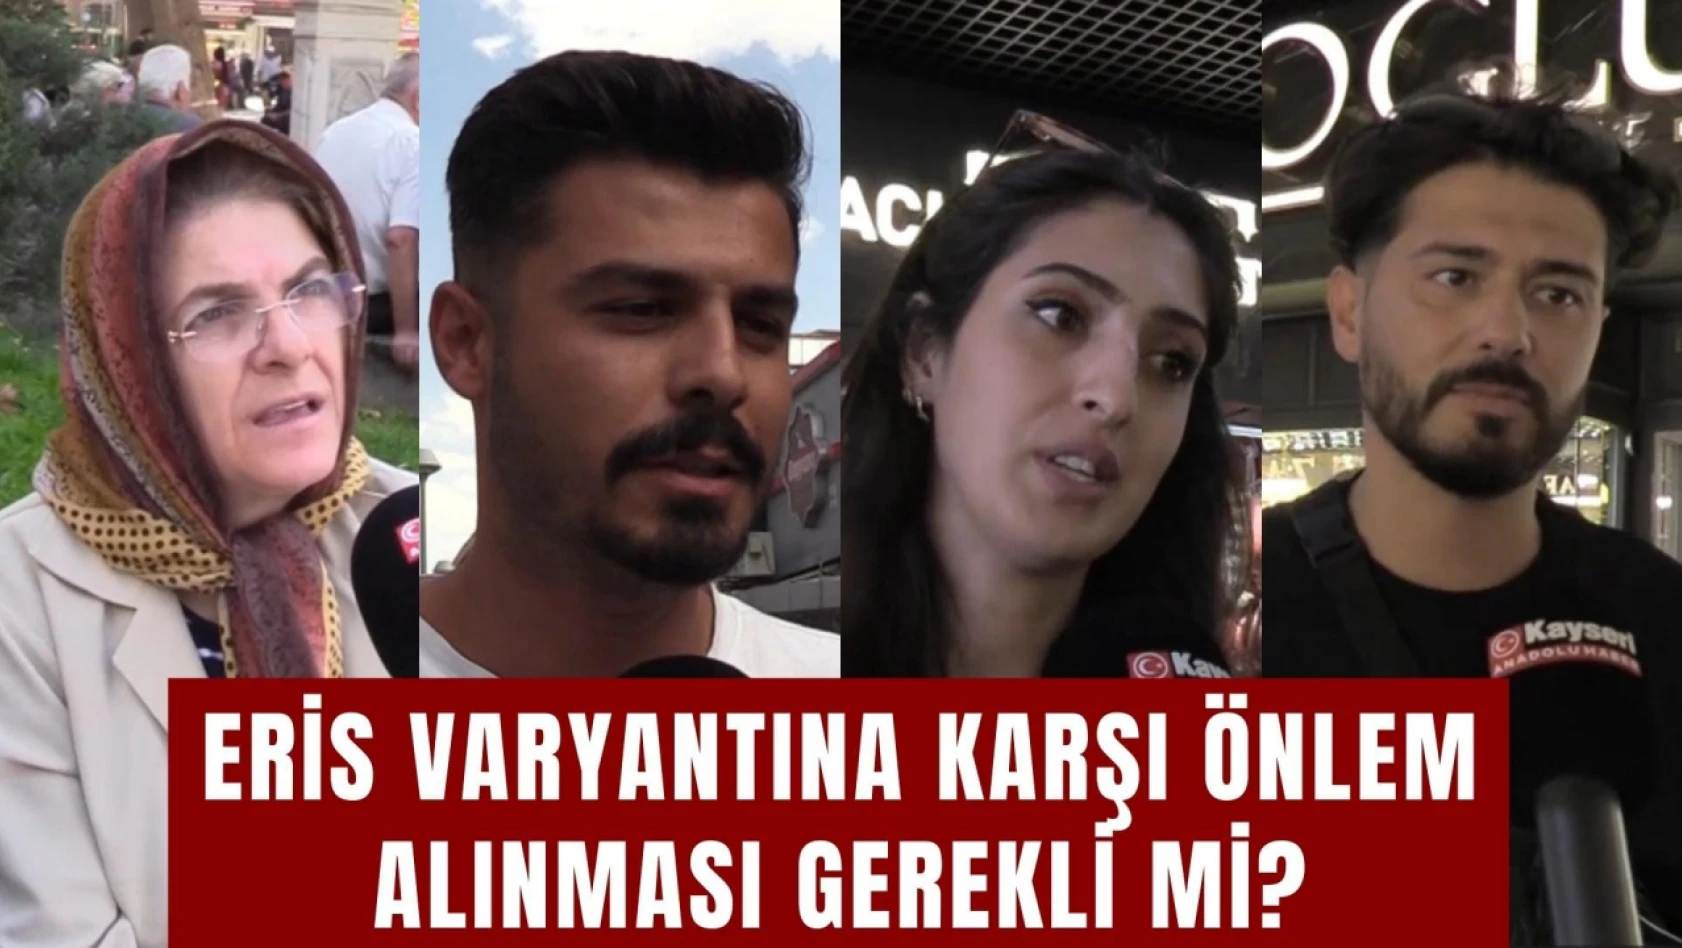 Eris varyantına karşı önlem alınması gerekli mi? Anadolu'da Z Raporu